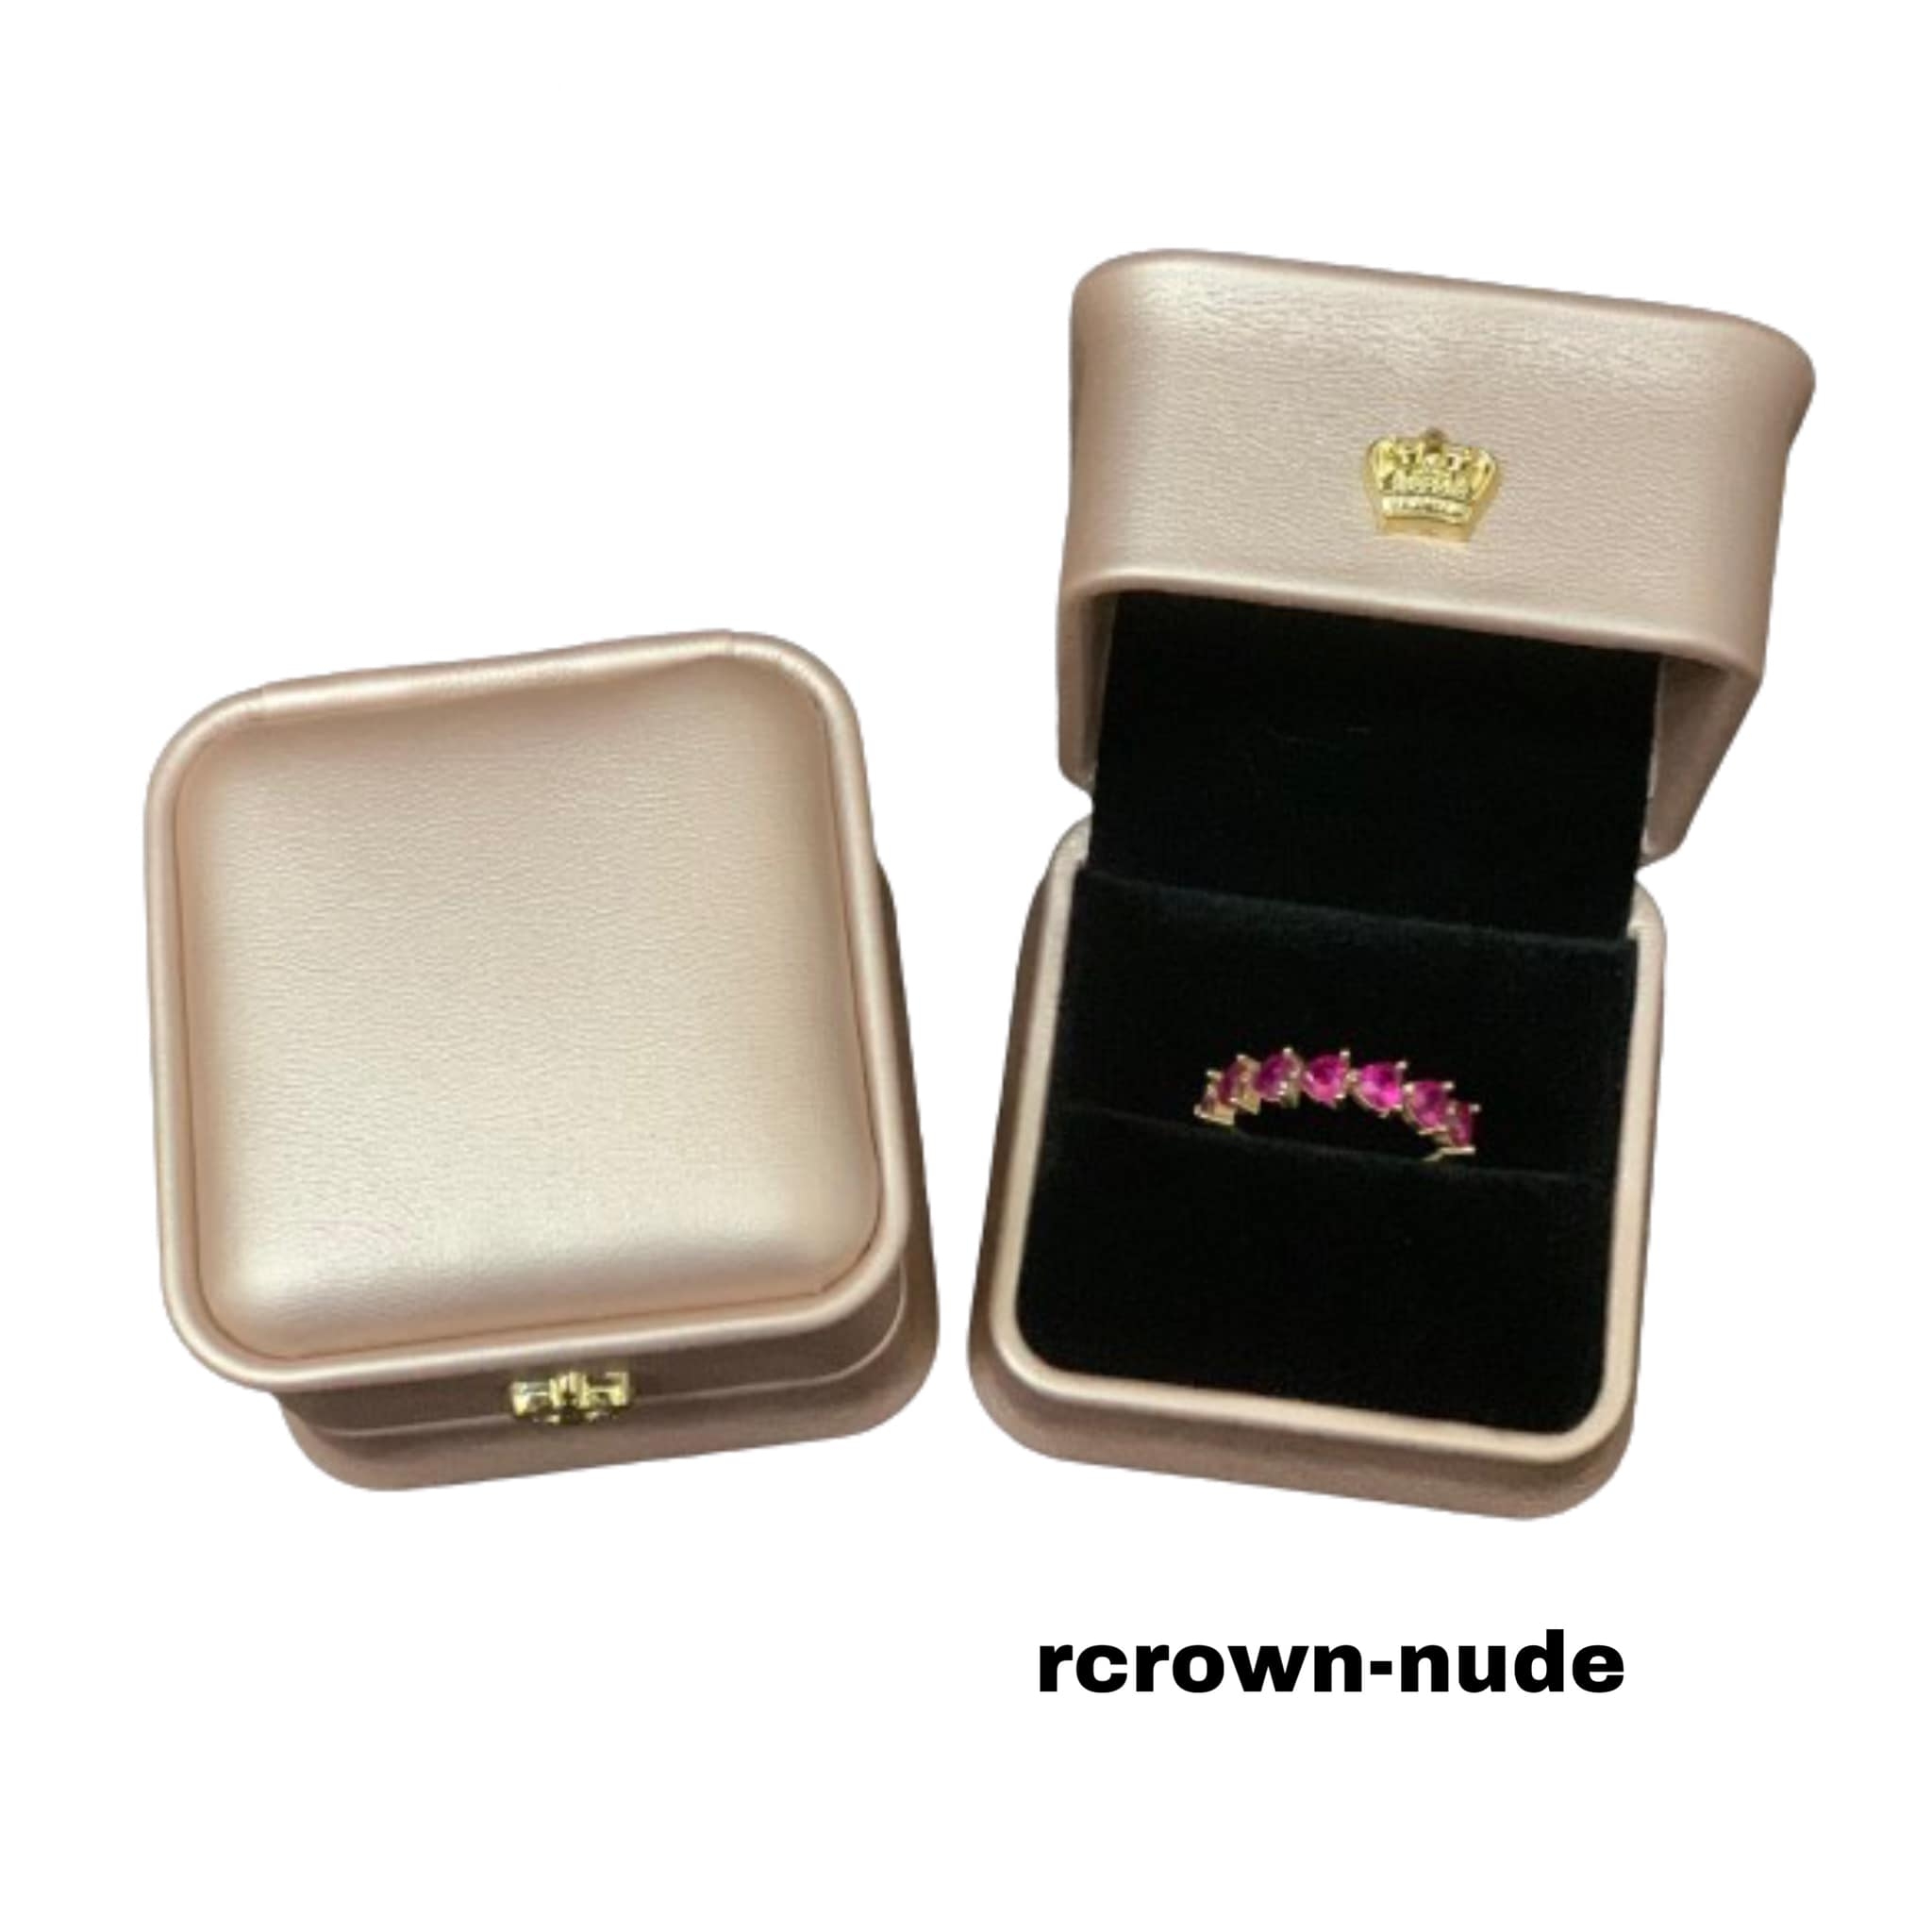 rcrown-nude